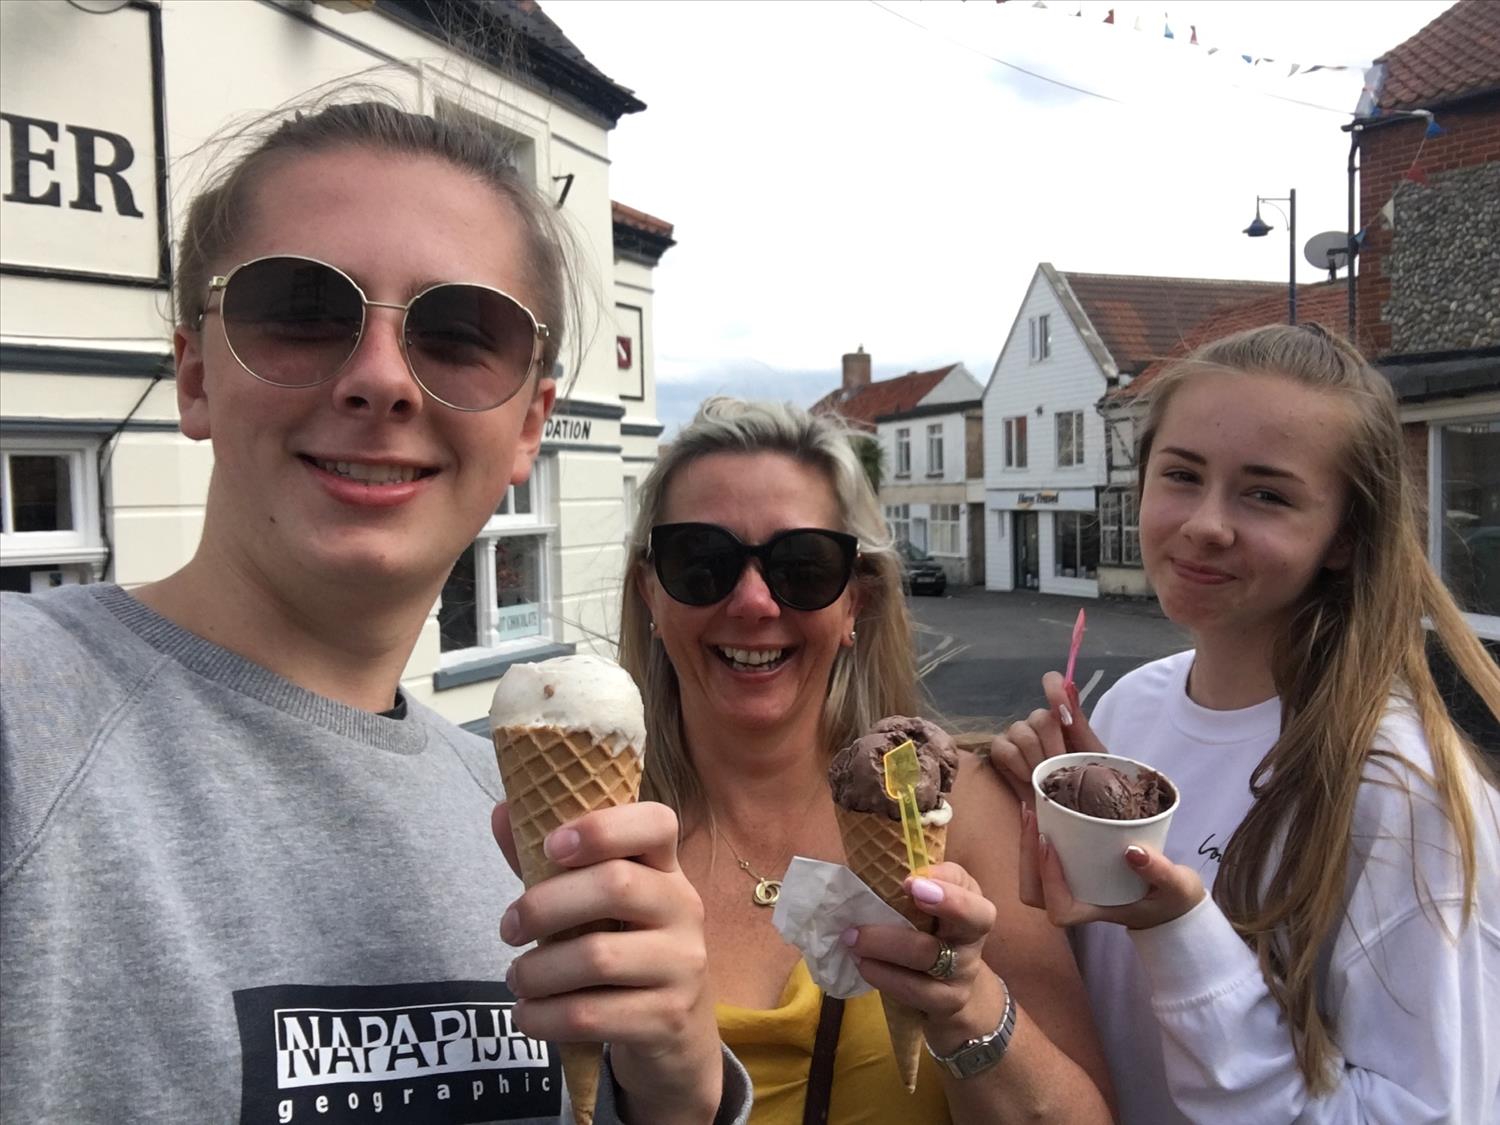 Ronaldo ice cream in Sheringham @NorfolkCoastline